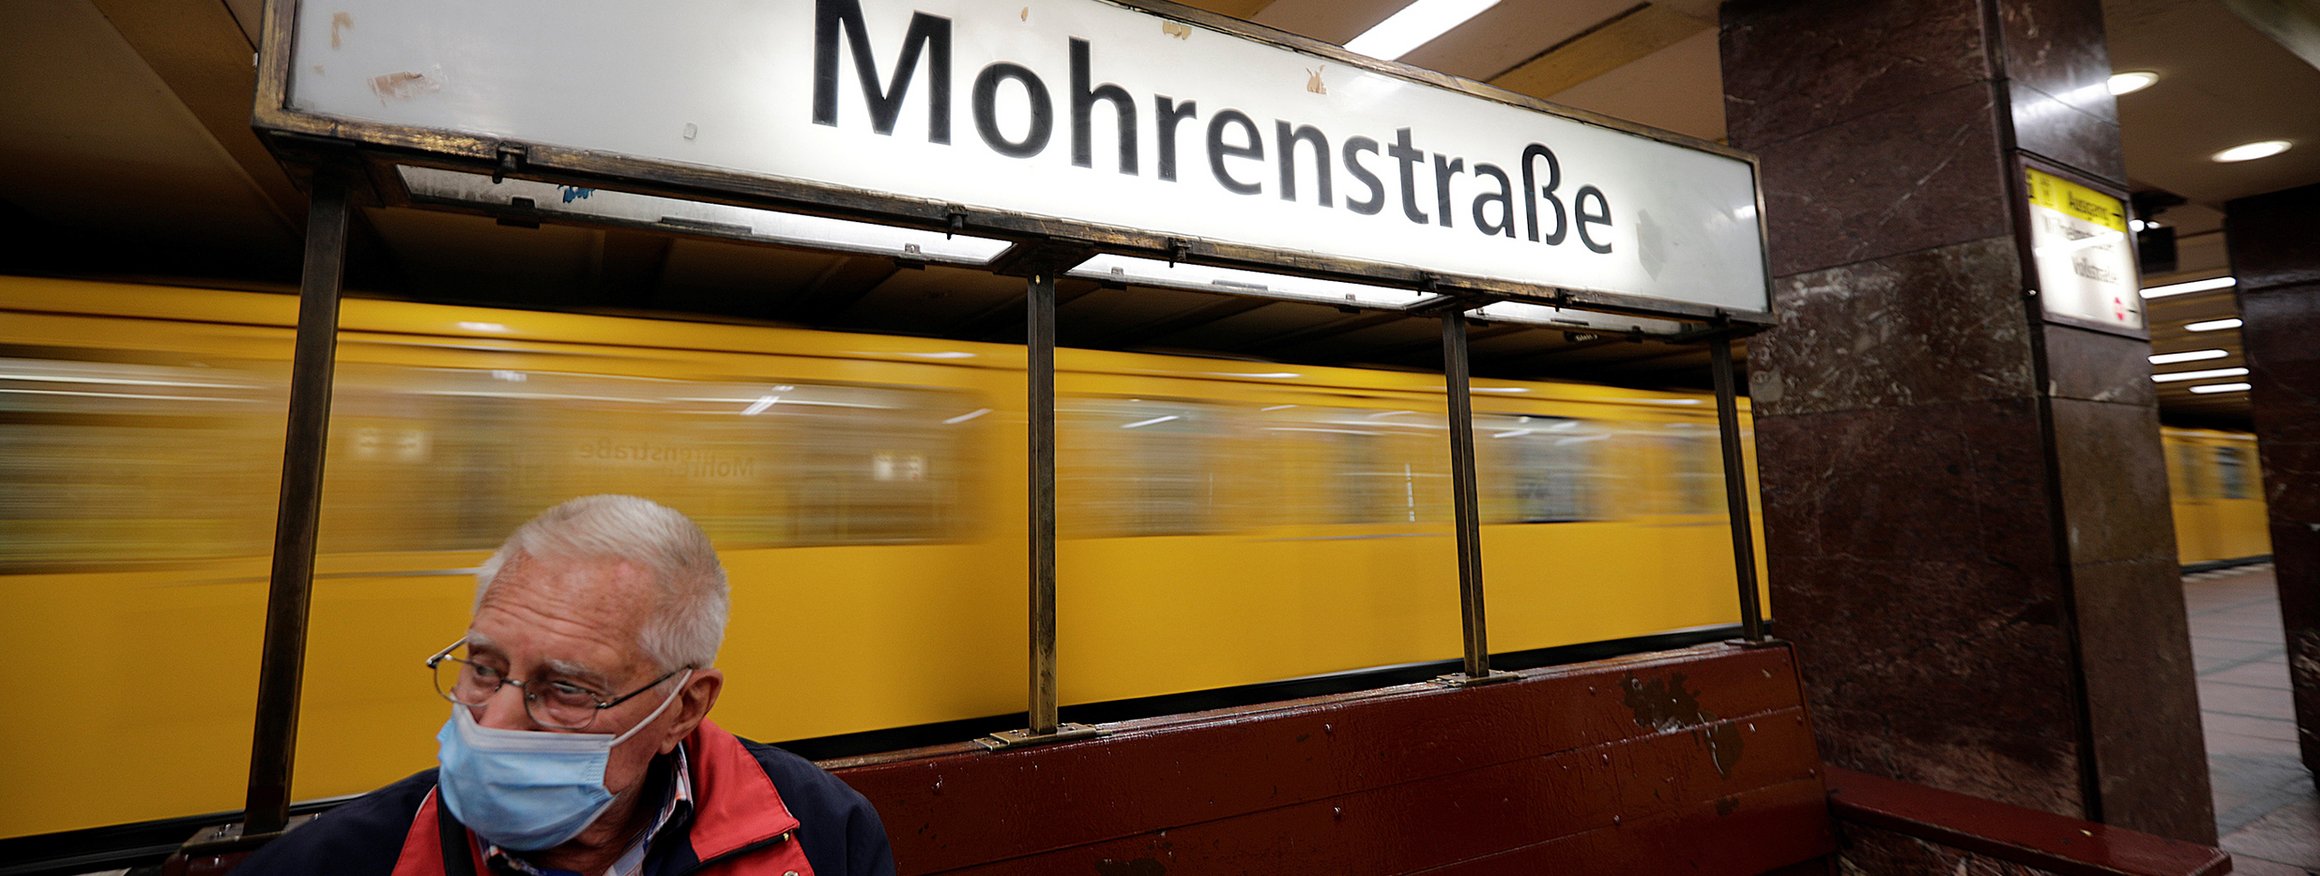 Ein älterer Mann mit Coronamaske sitzt an einer Bahnstation, die Mohrenstraße heißt, während hinter ihm eine Bahn vorbeifährt